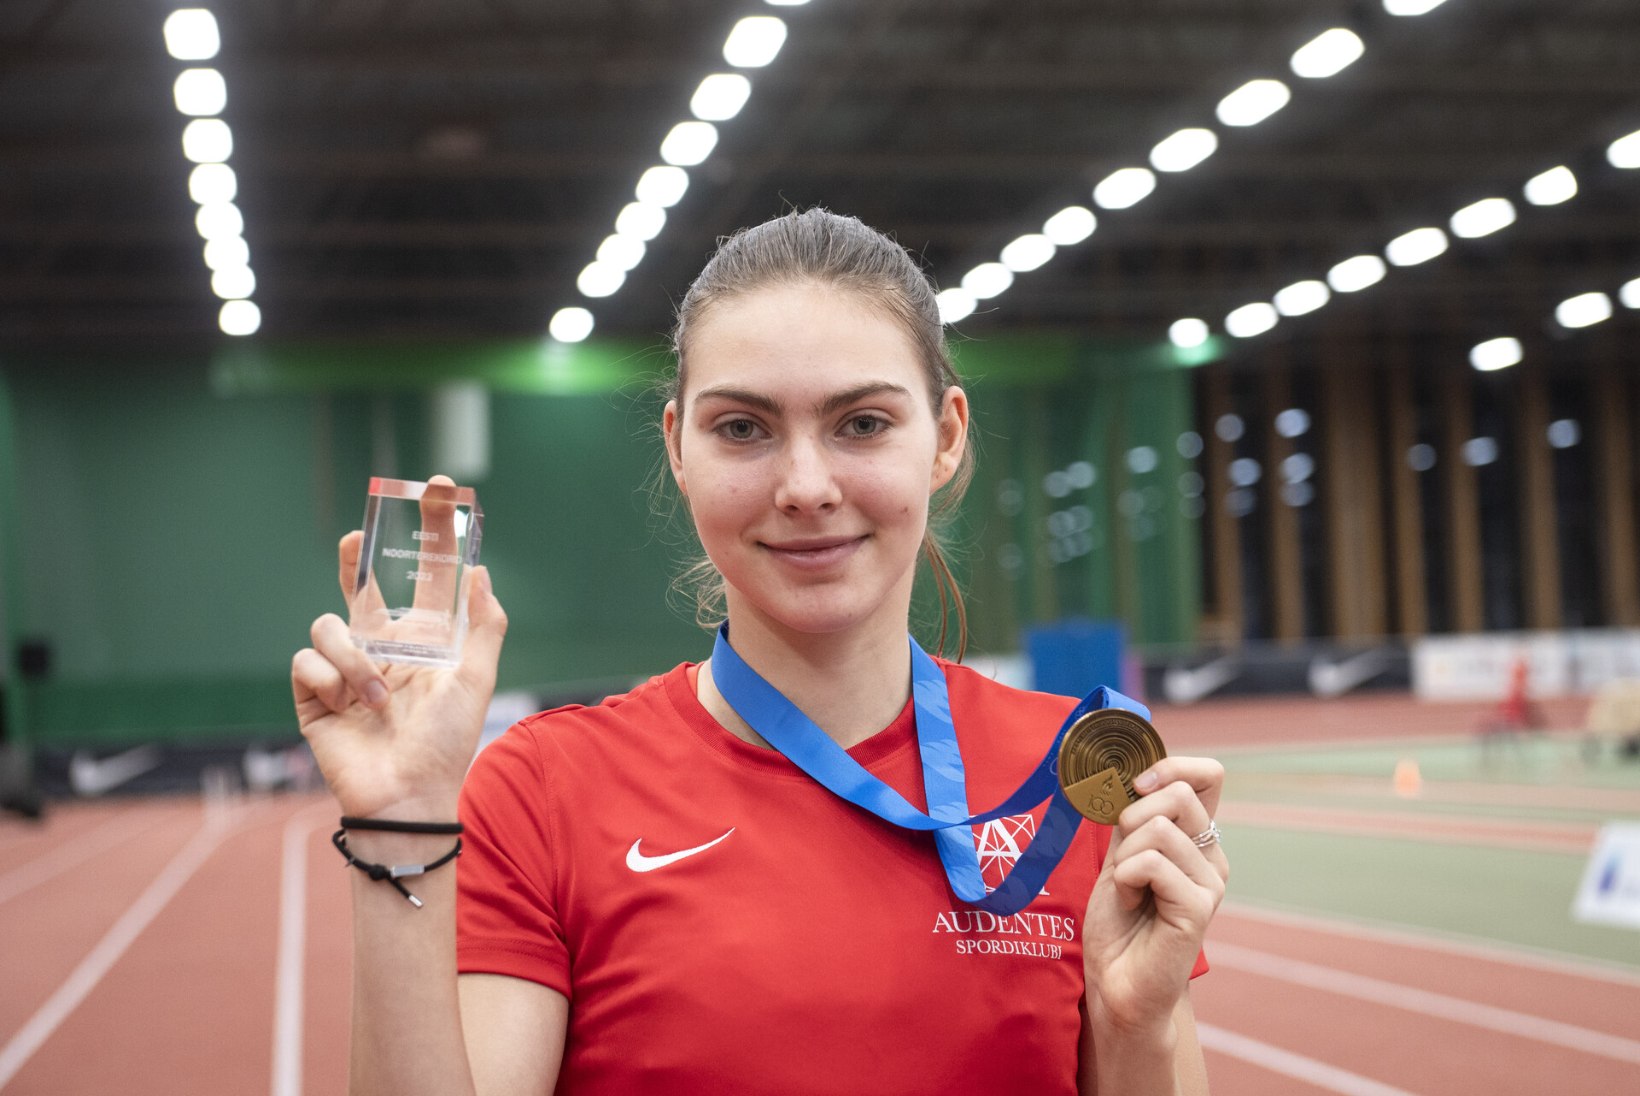 Lusti ületas Baltale kuulunud Eesti rekordi, sprinter debüteeris mitmevõistluses